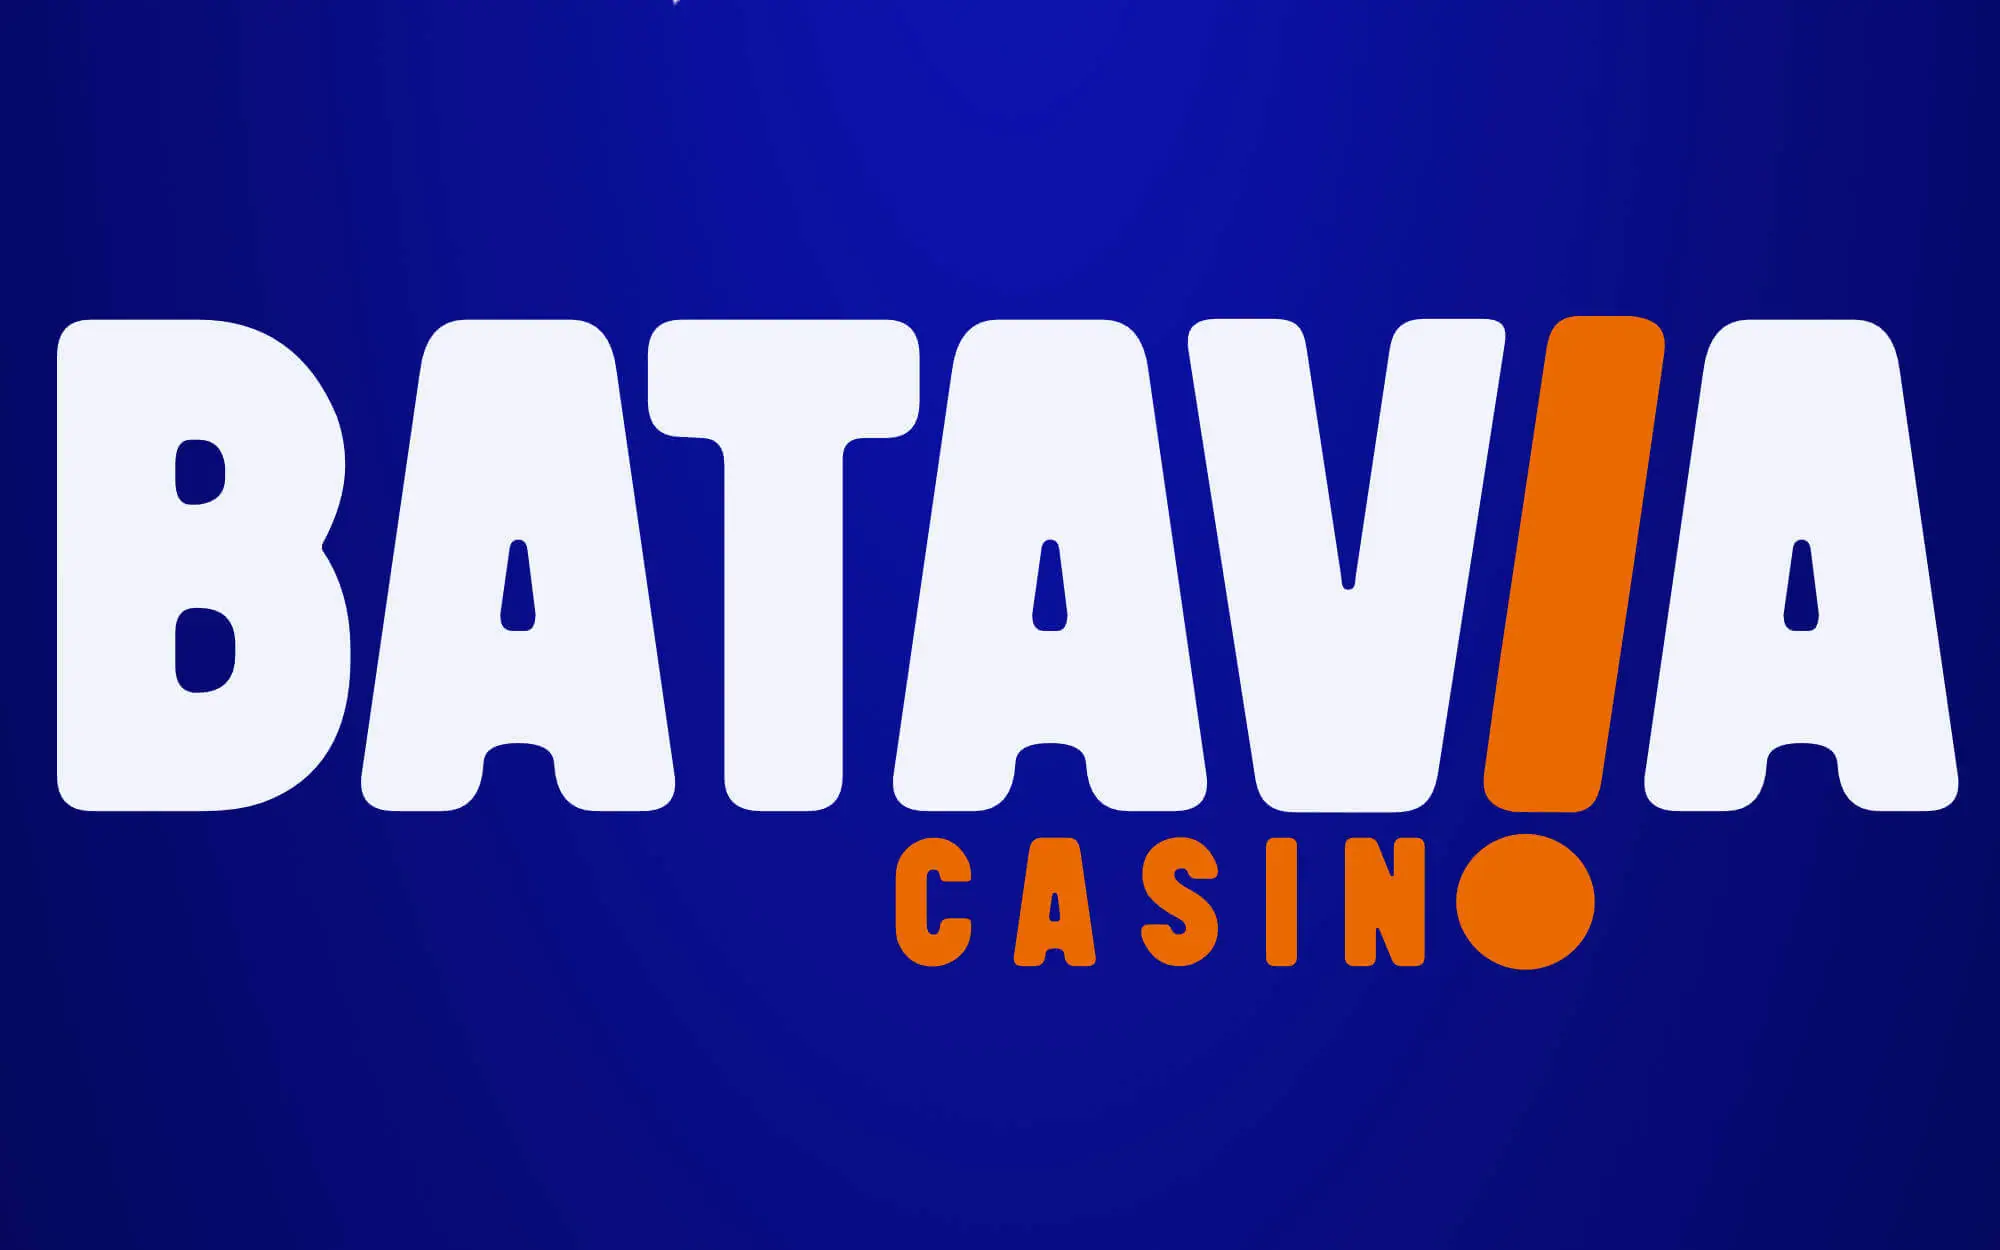 Batavia Casino als zesde lid aangesloten bij VNLOK